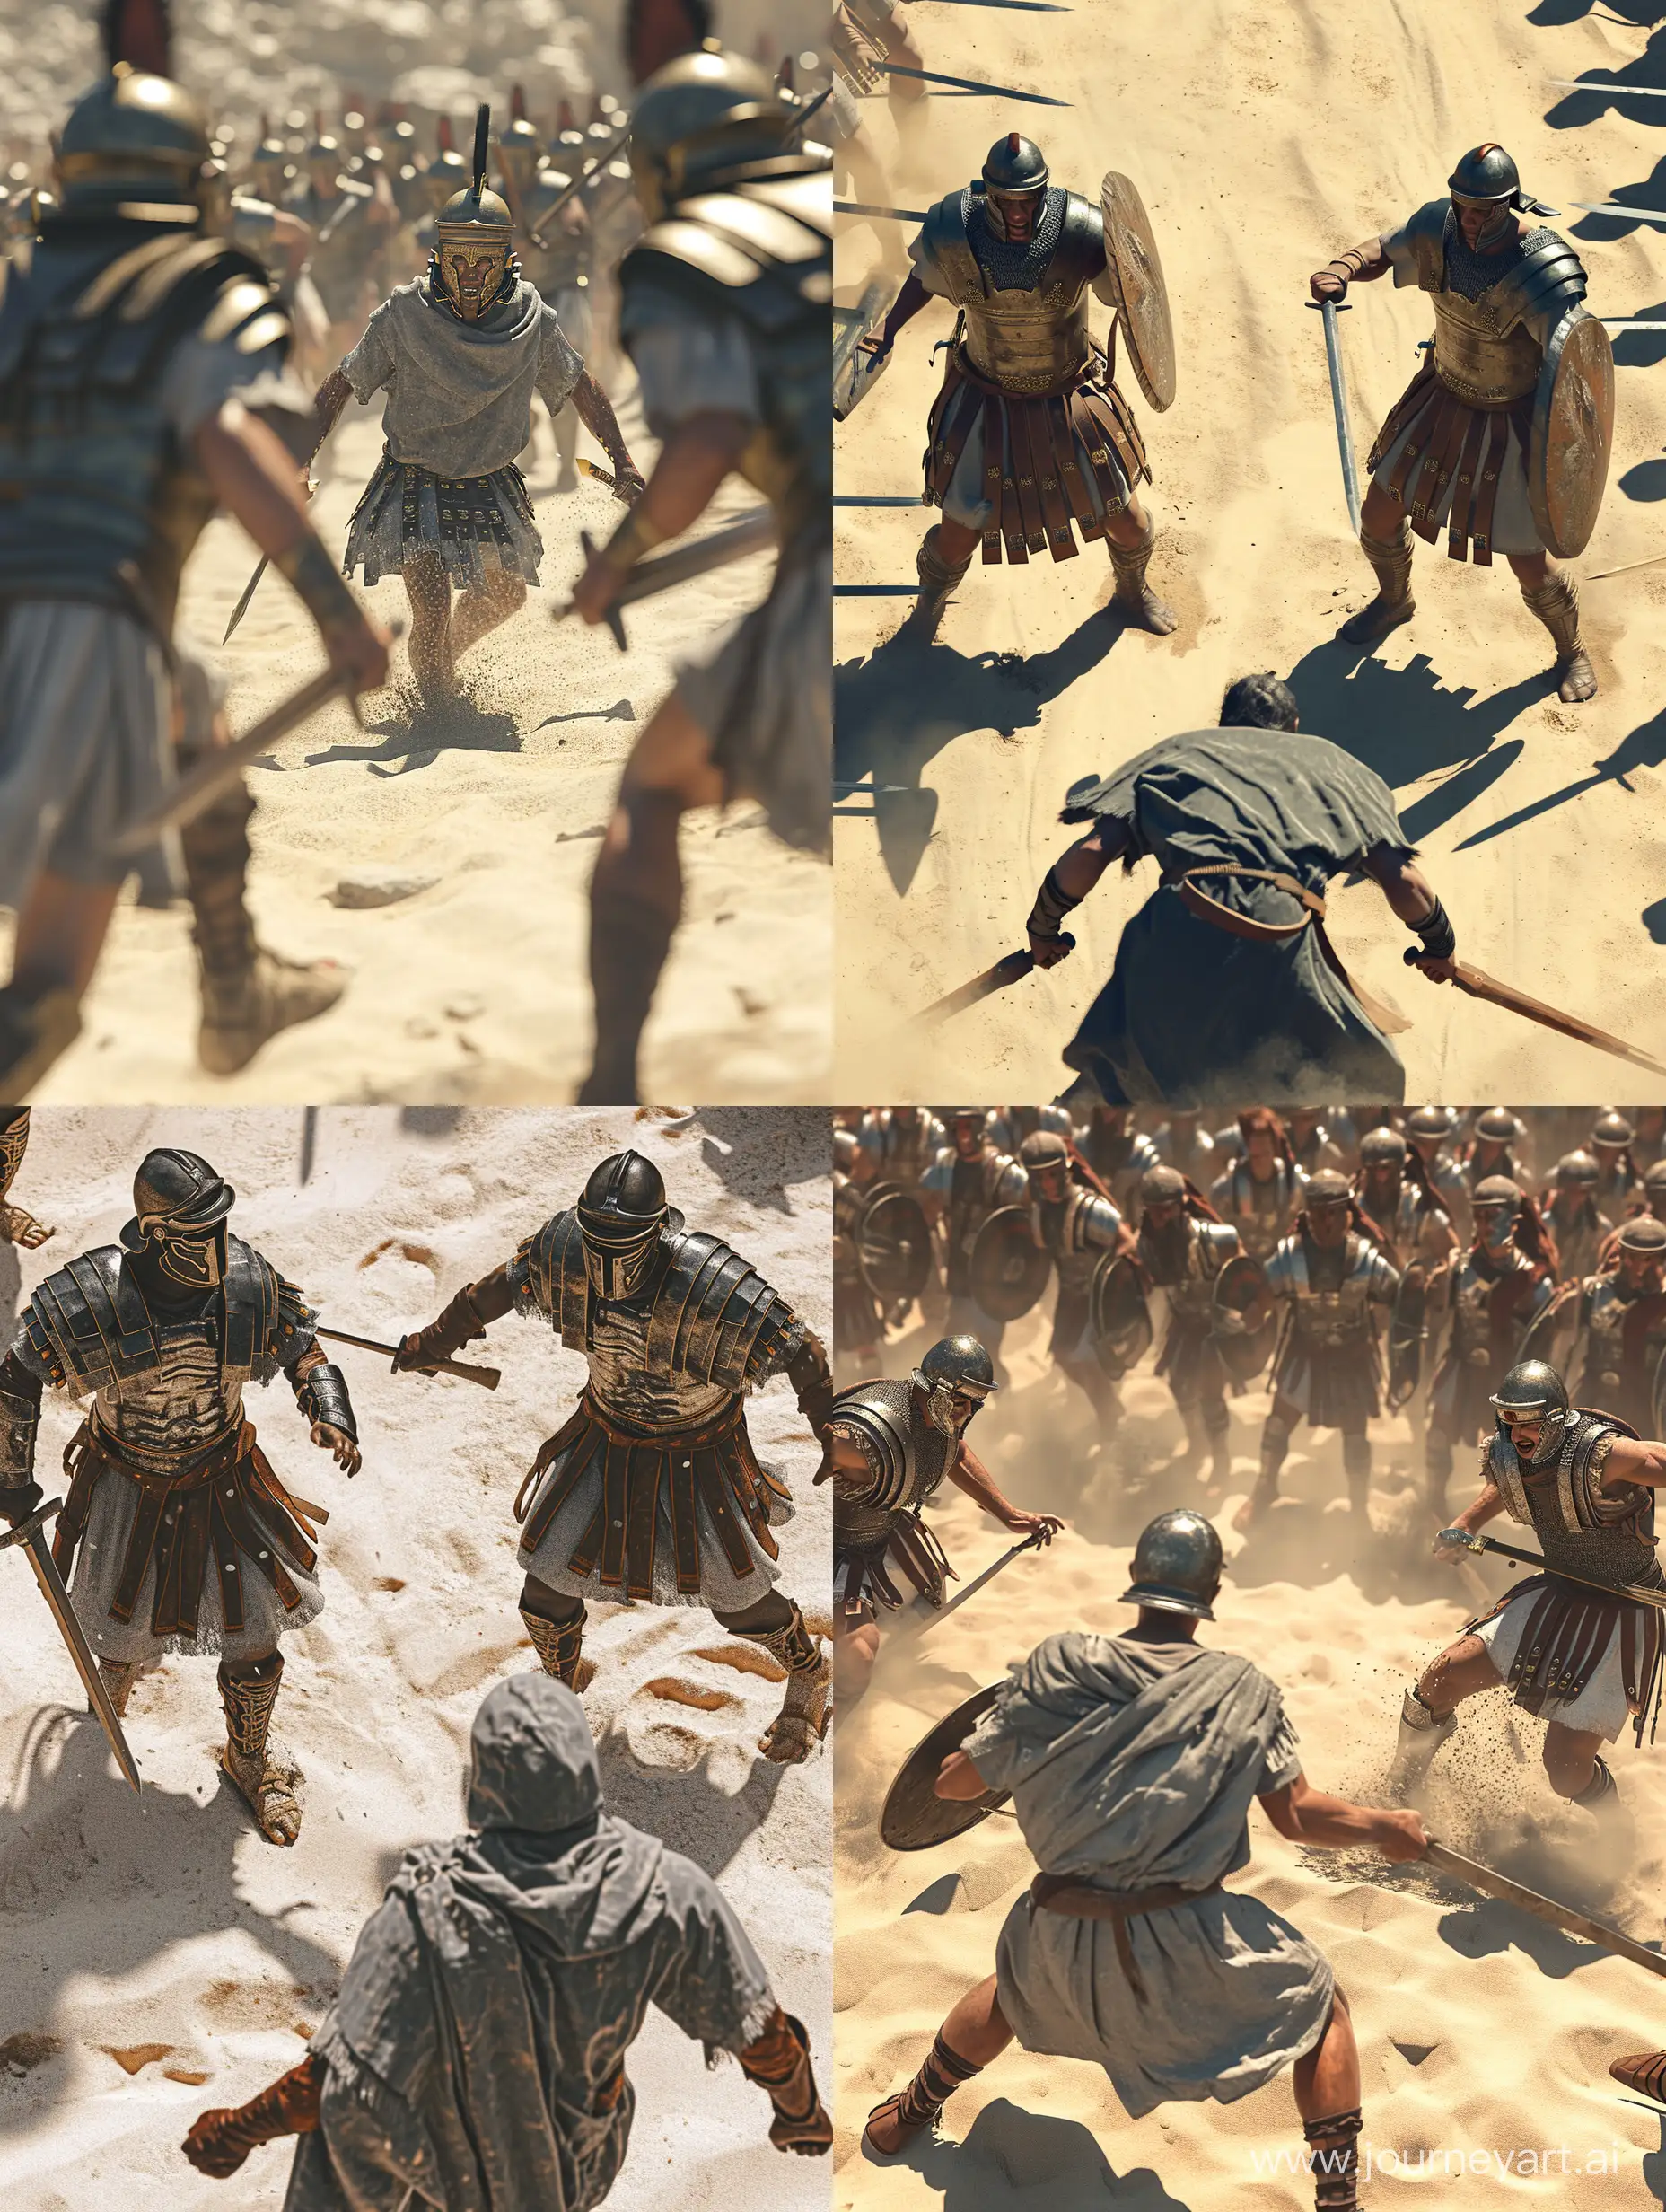 создай картинку два рядовых римских легионера бьют легионера в серой тунике, под ногами песок, стиль dark souls, высокая детализация, максимальный реализм, 16K